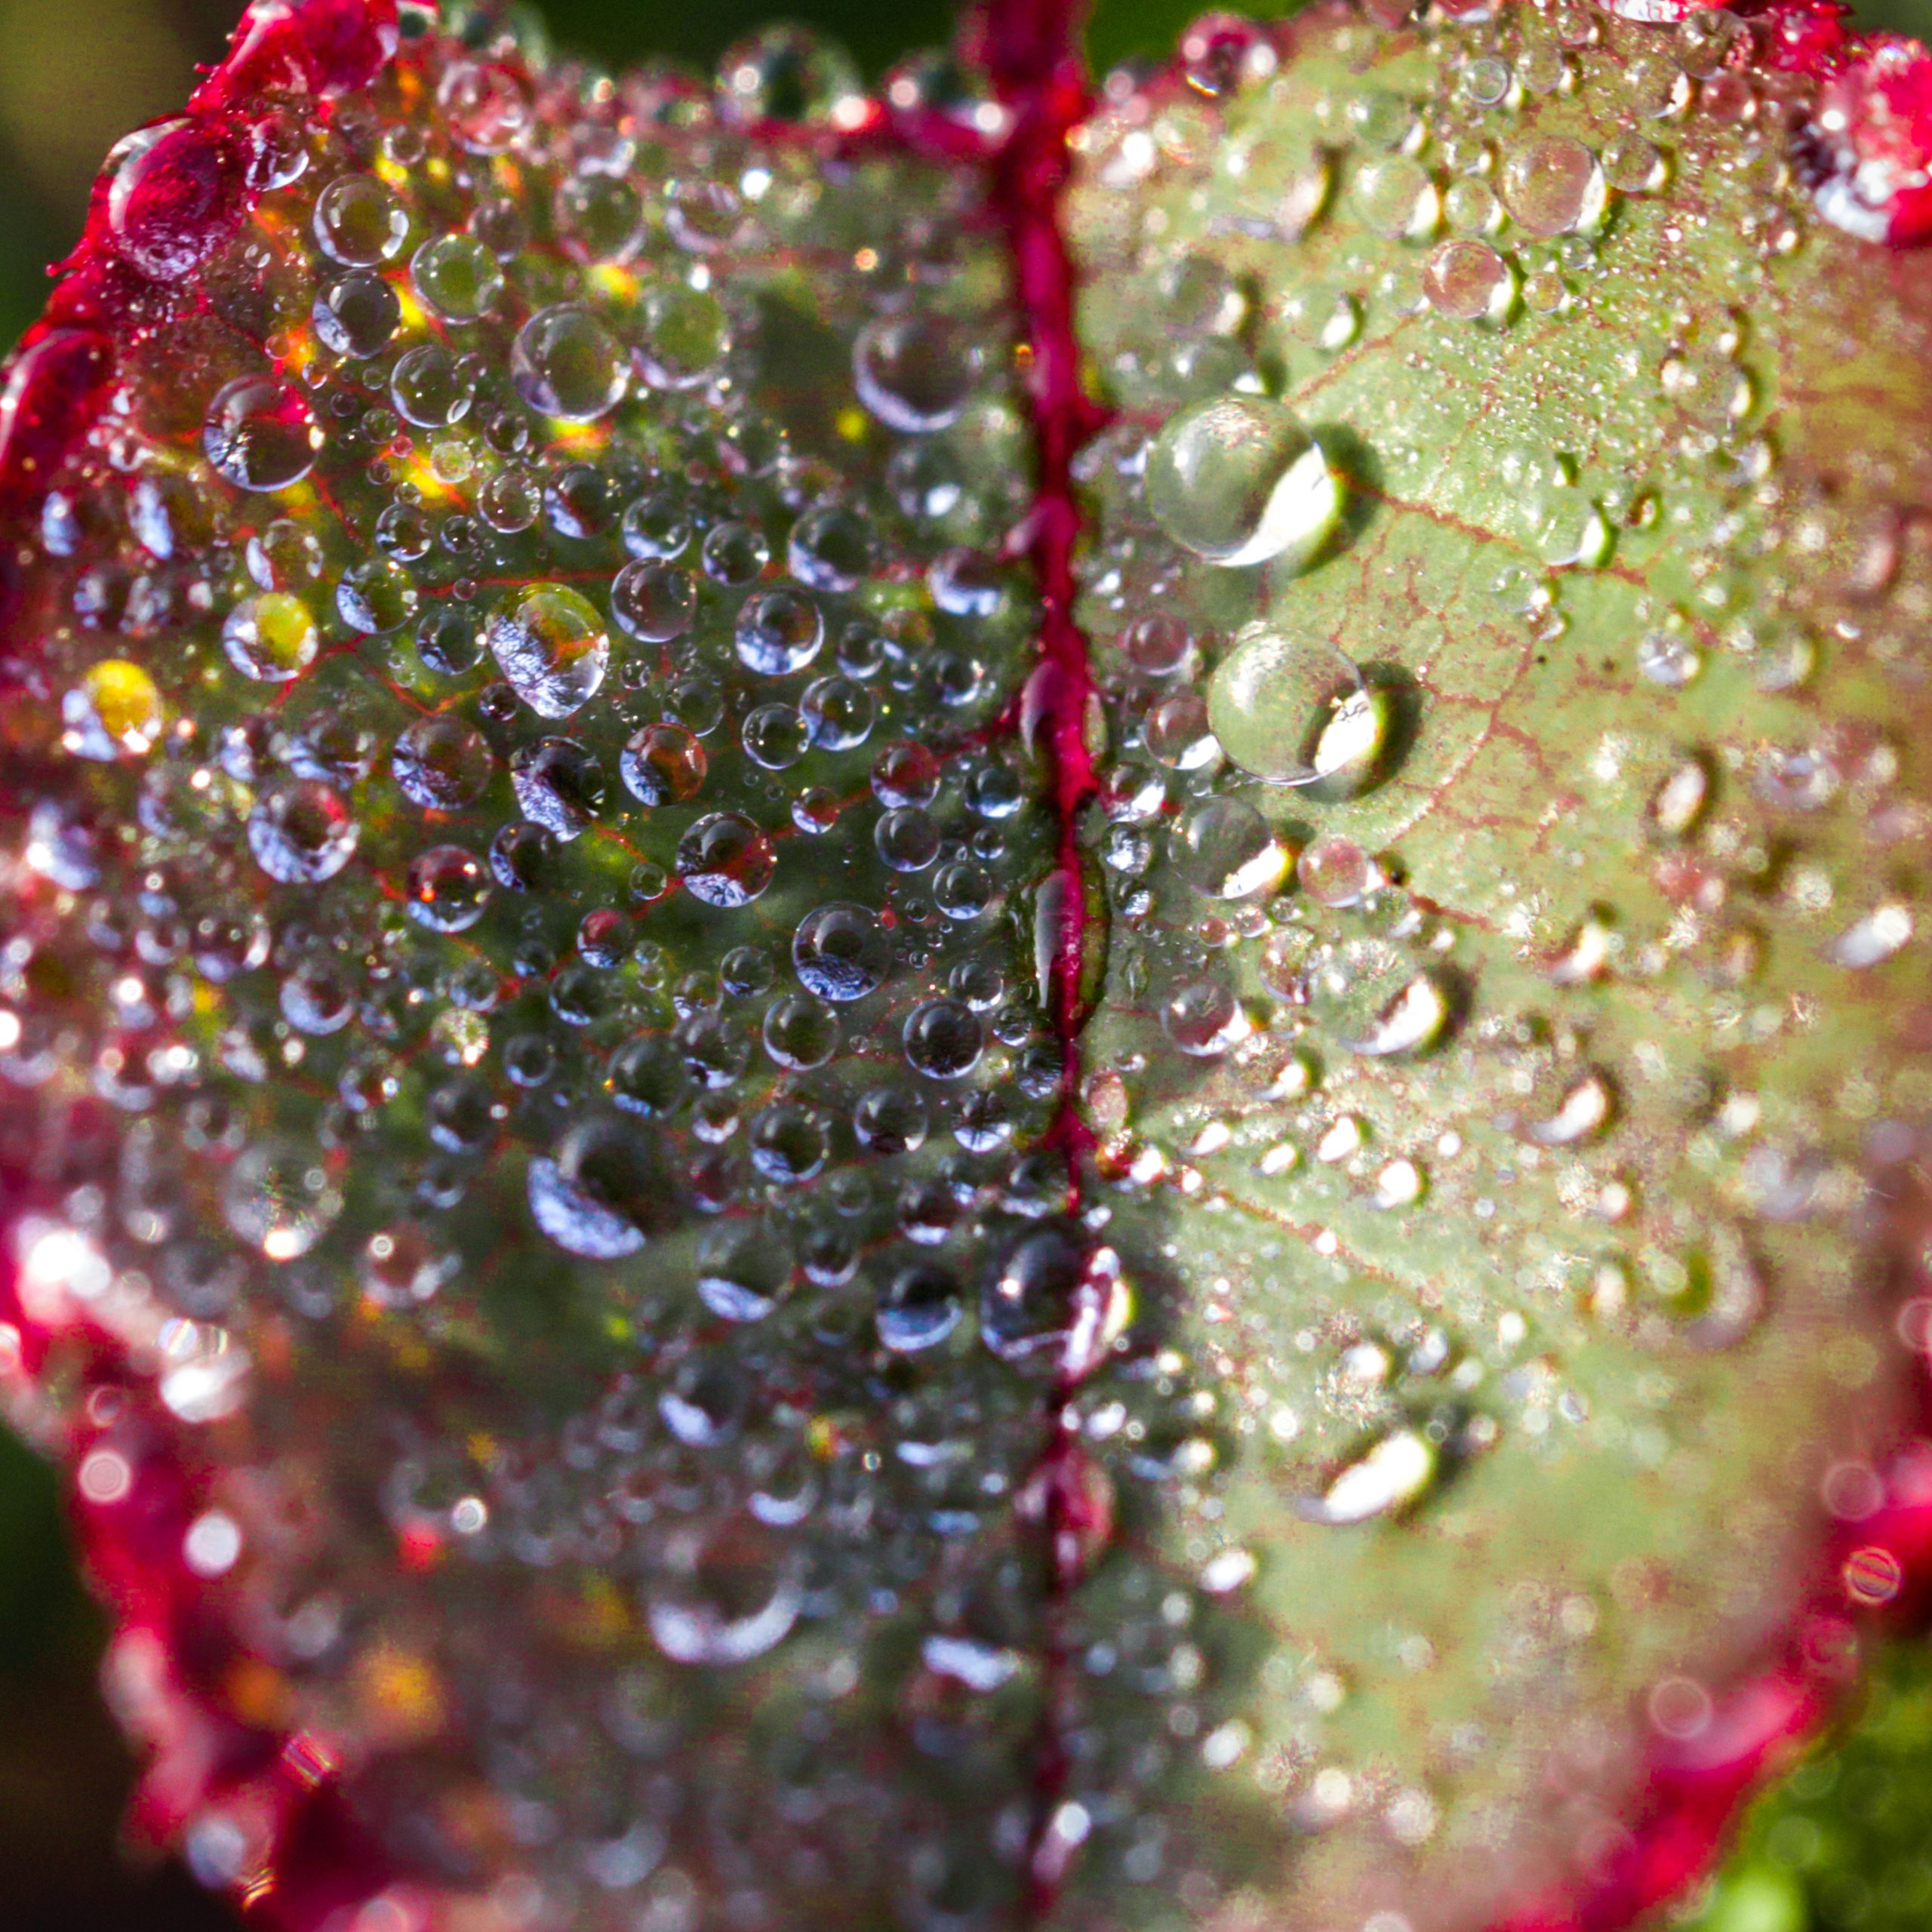 Dew on textured leaf